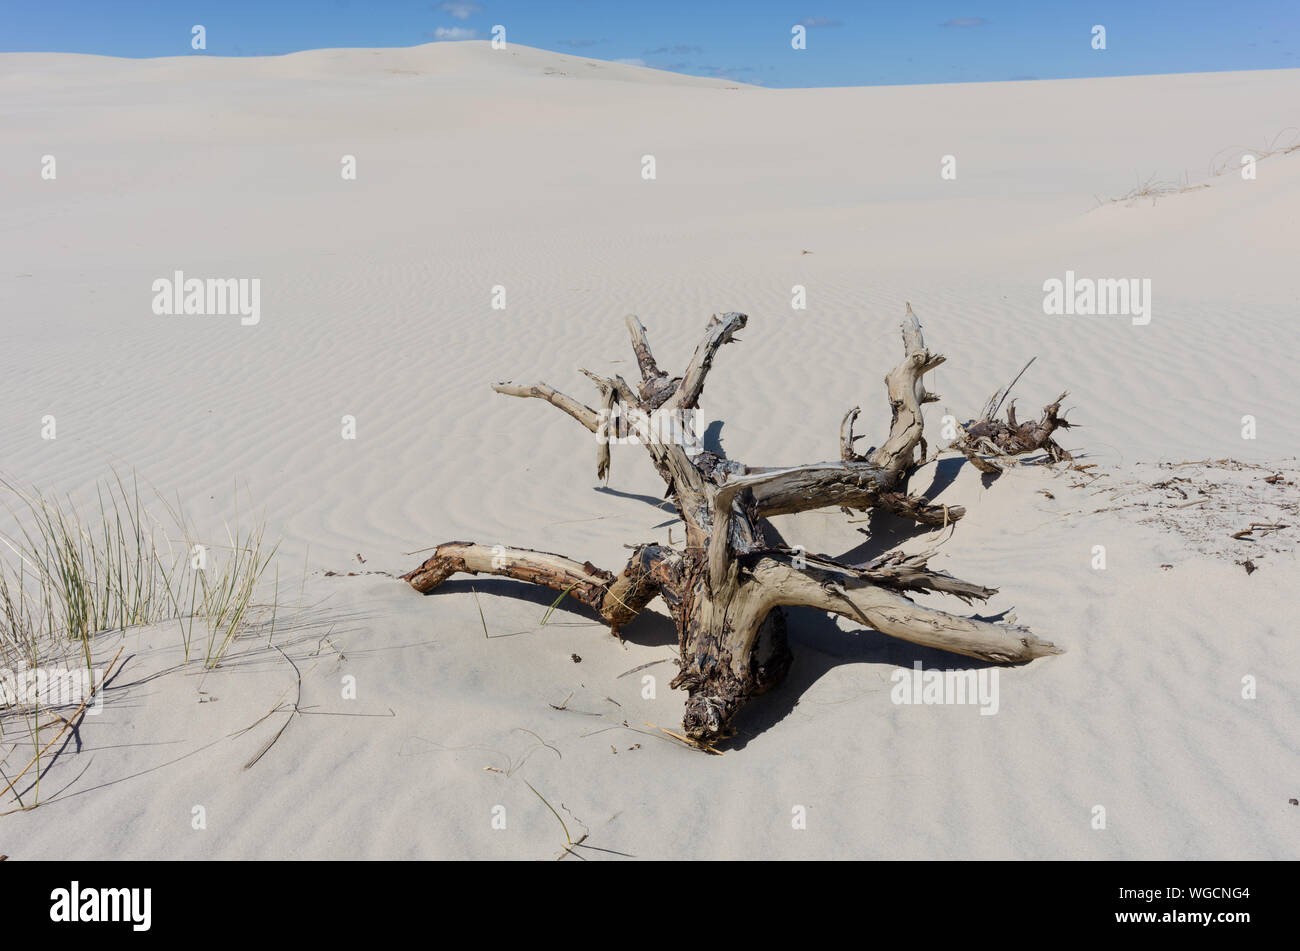 Dead Tree On Sand Dunes At Desert Against Sky Stock Photo